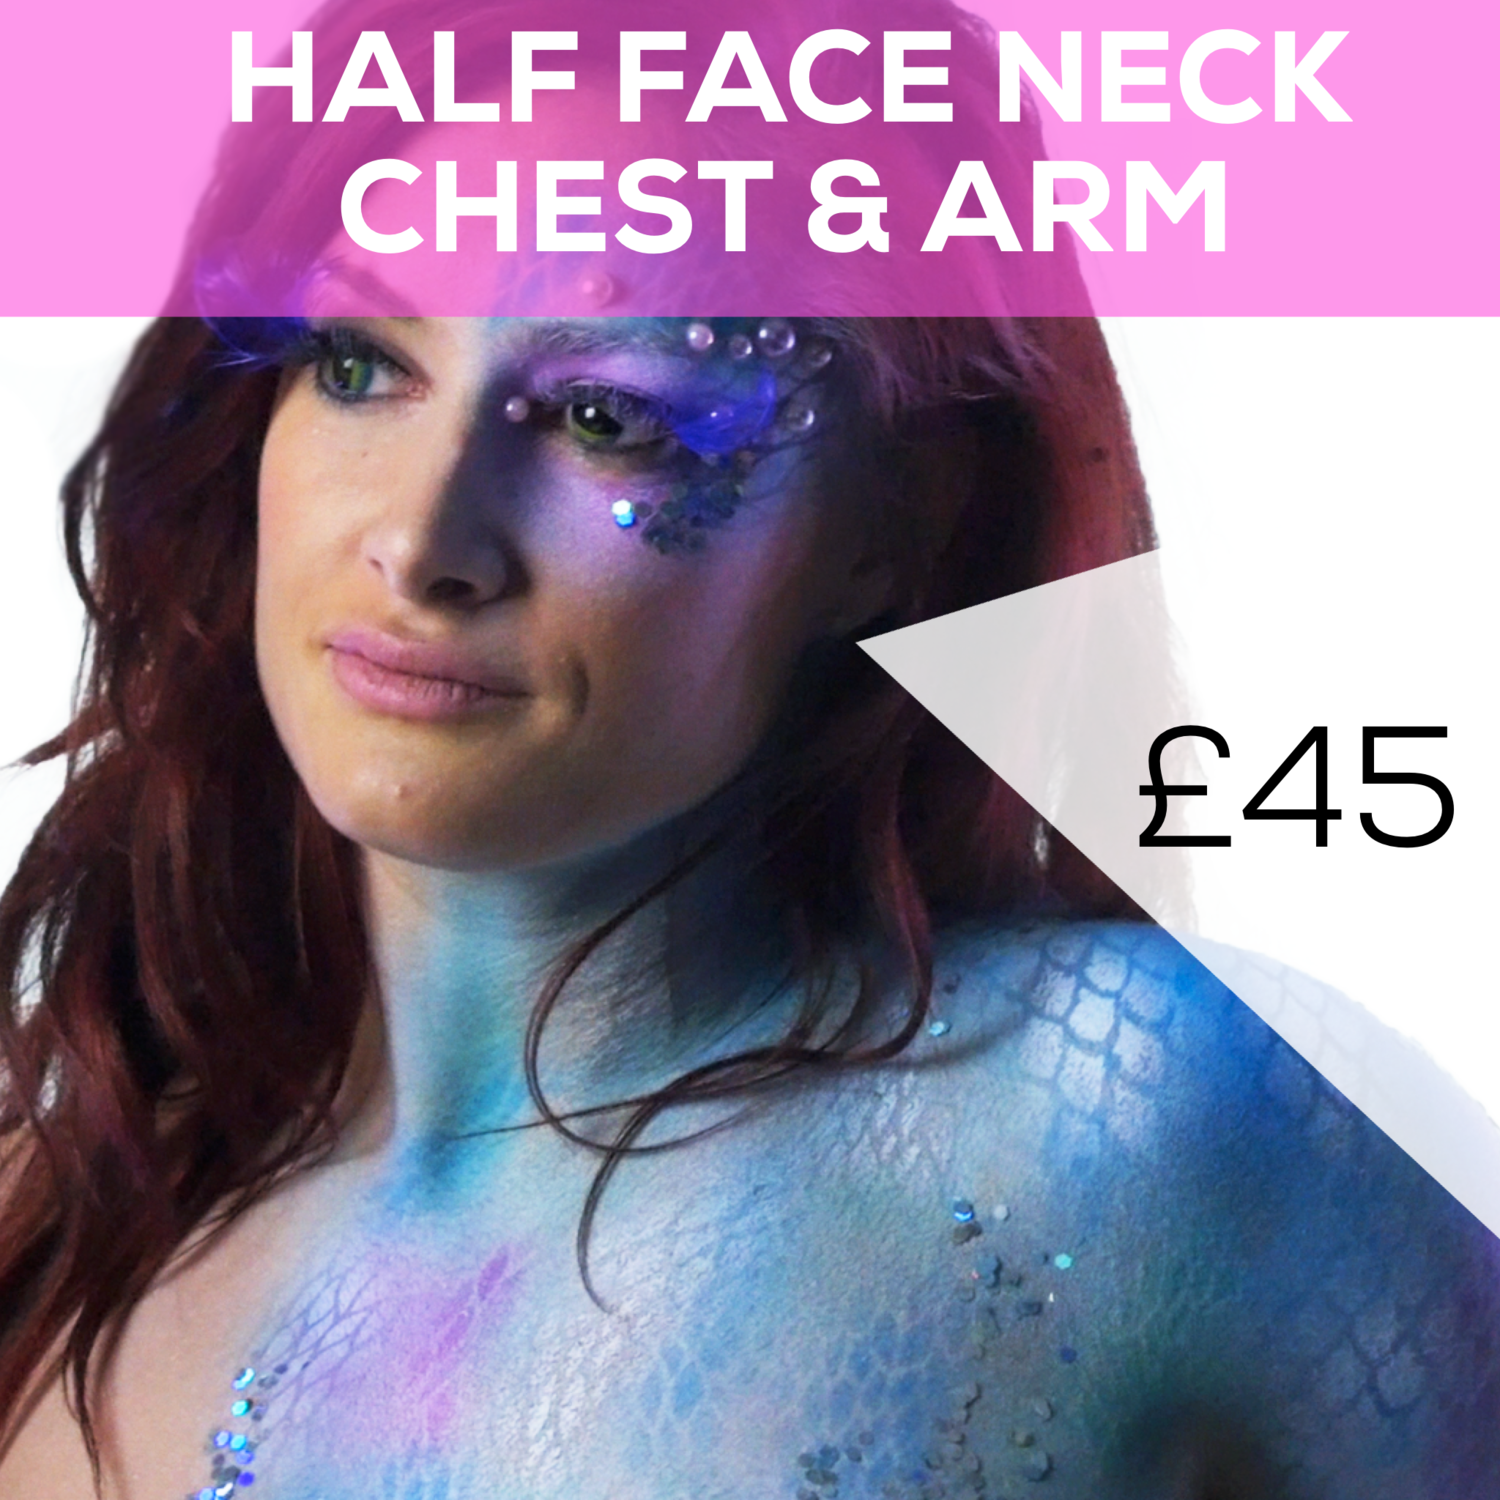 Half Face Neck Chest & Arm Ibiza bodypaint